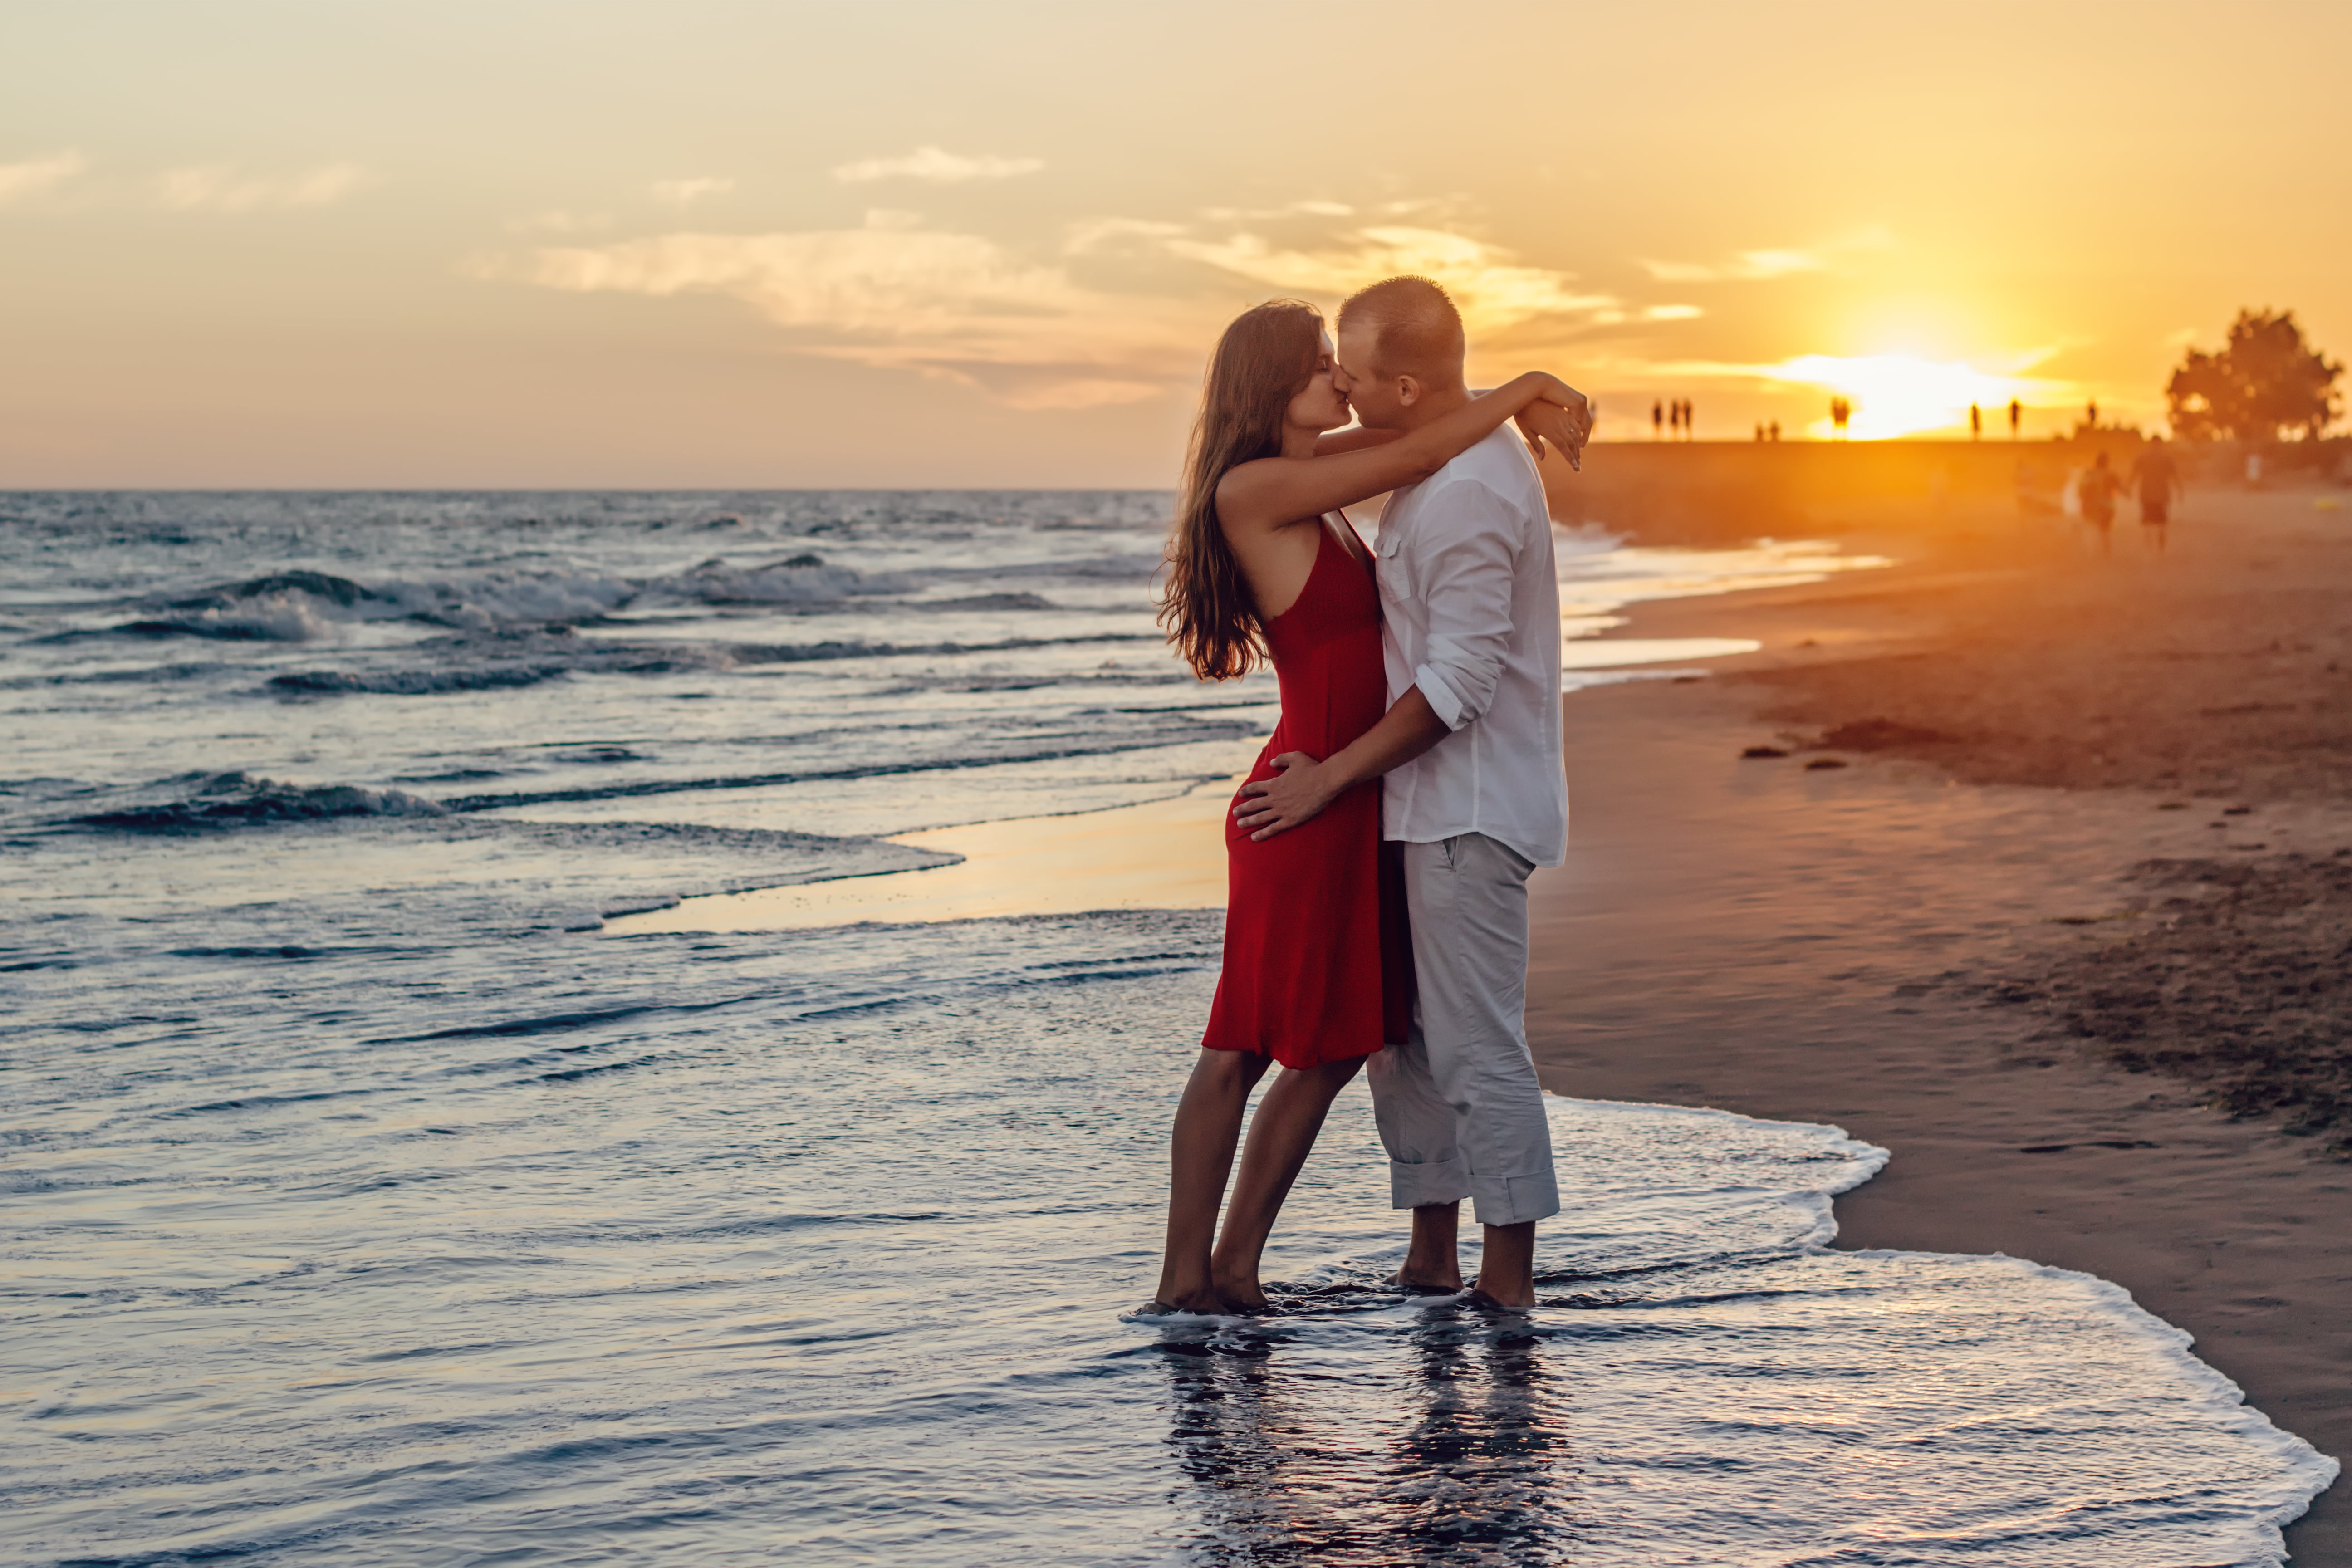 Любимая картинки романтичные для женщины. Влюбленная пара на берегу моря. Поцелуй на берегу моря. Счастливая влюбленная пара. Красивые парочки.